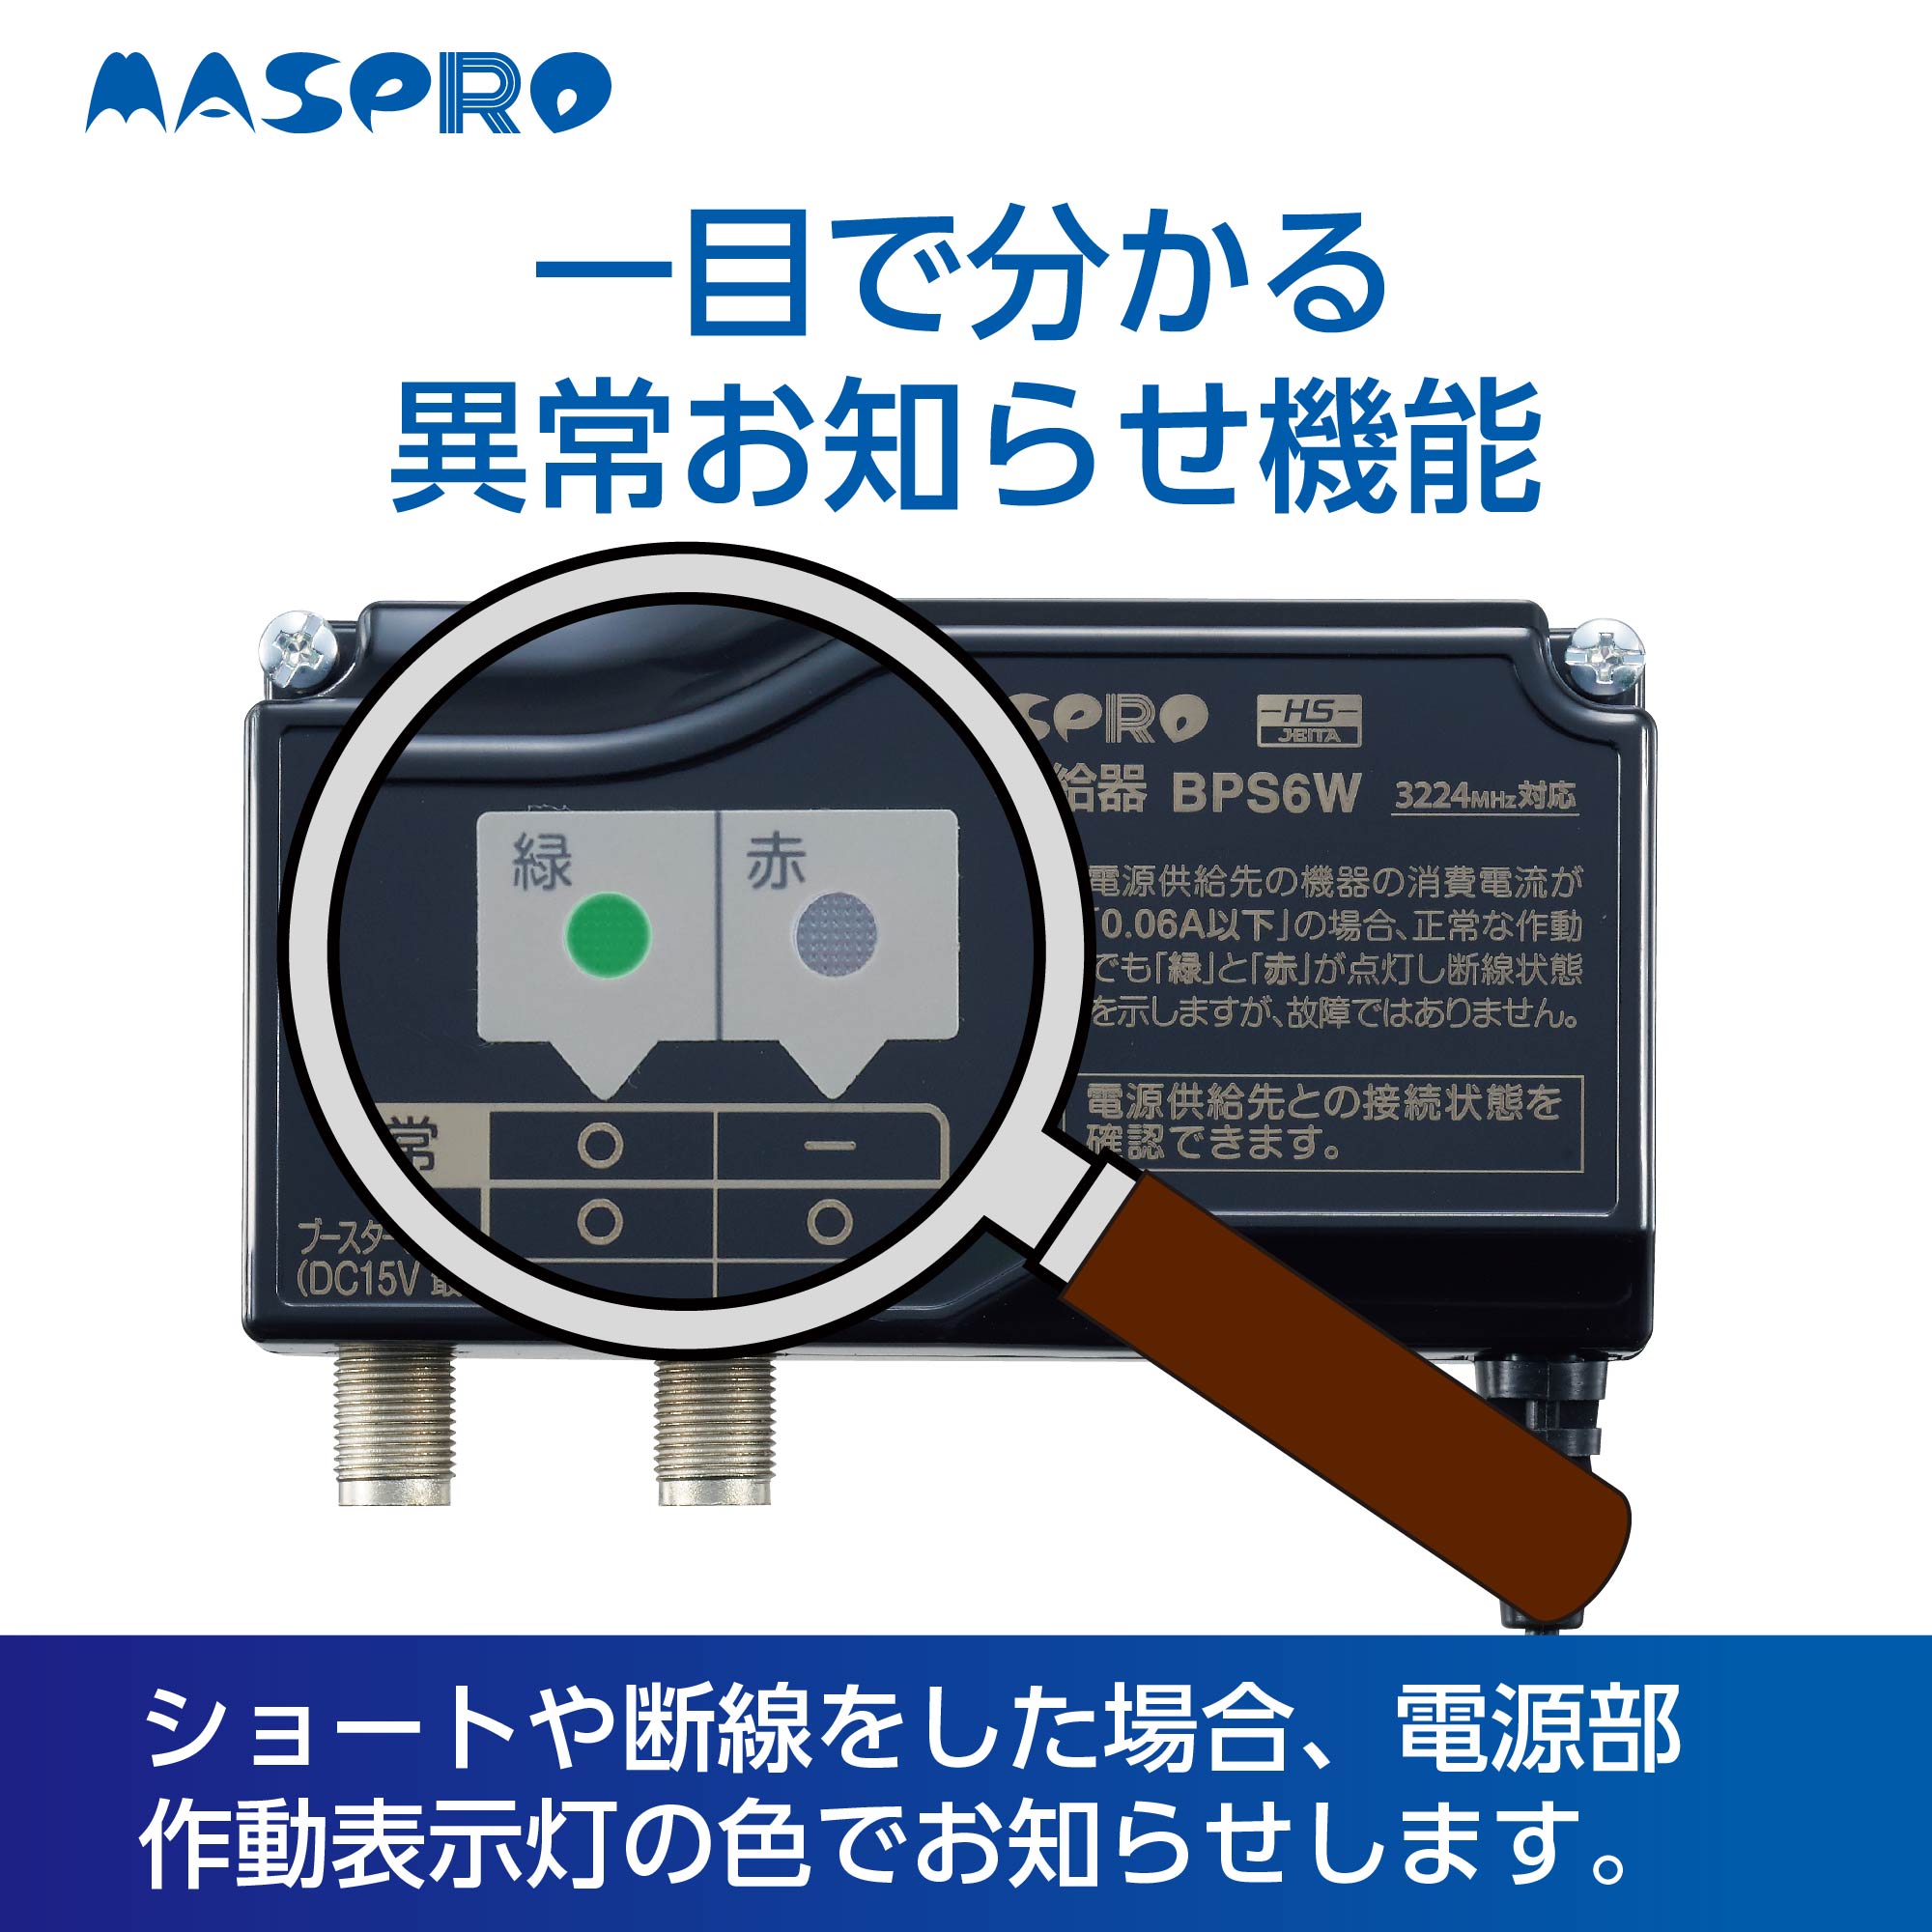 【マスプロ電工】 UHF+CS/BS-IFブースター（利得41dB）【4K8K対応品】 EP3UBCB